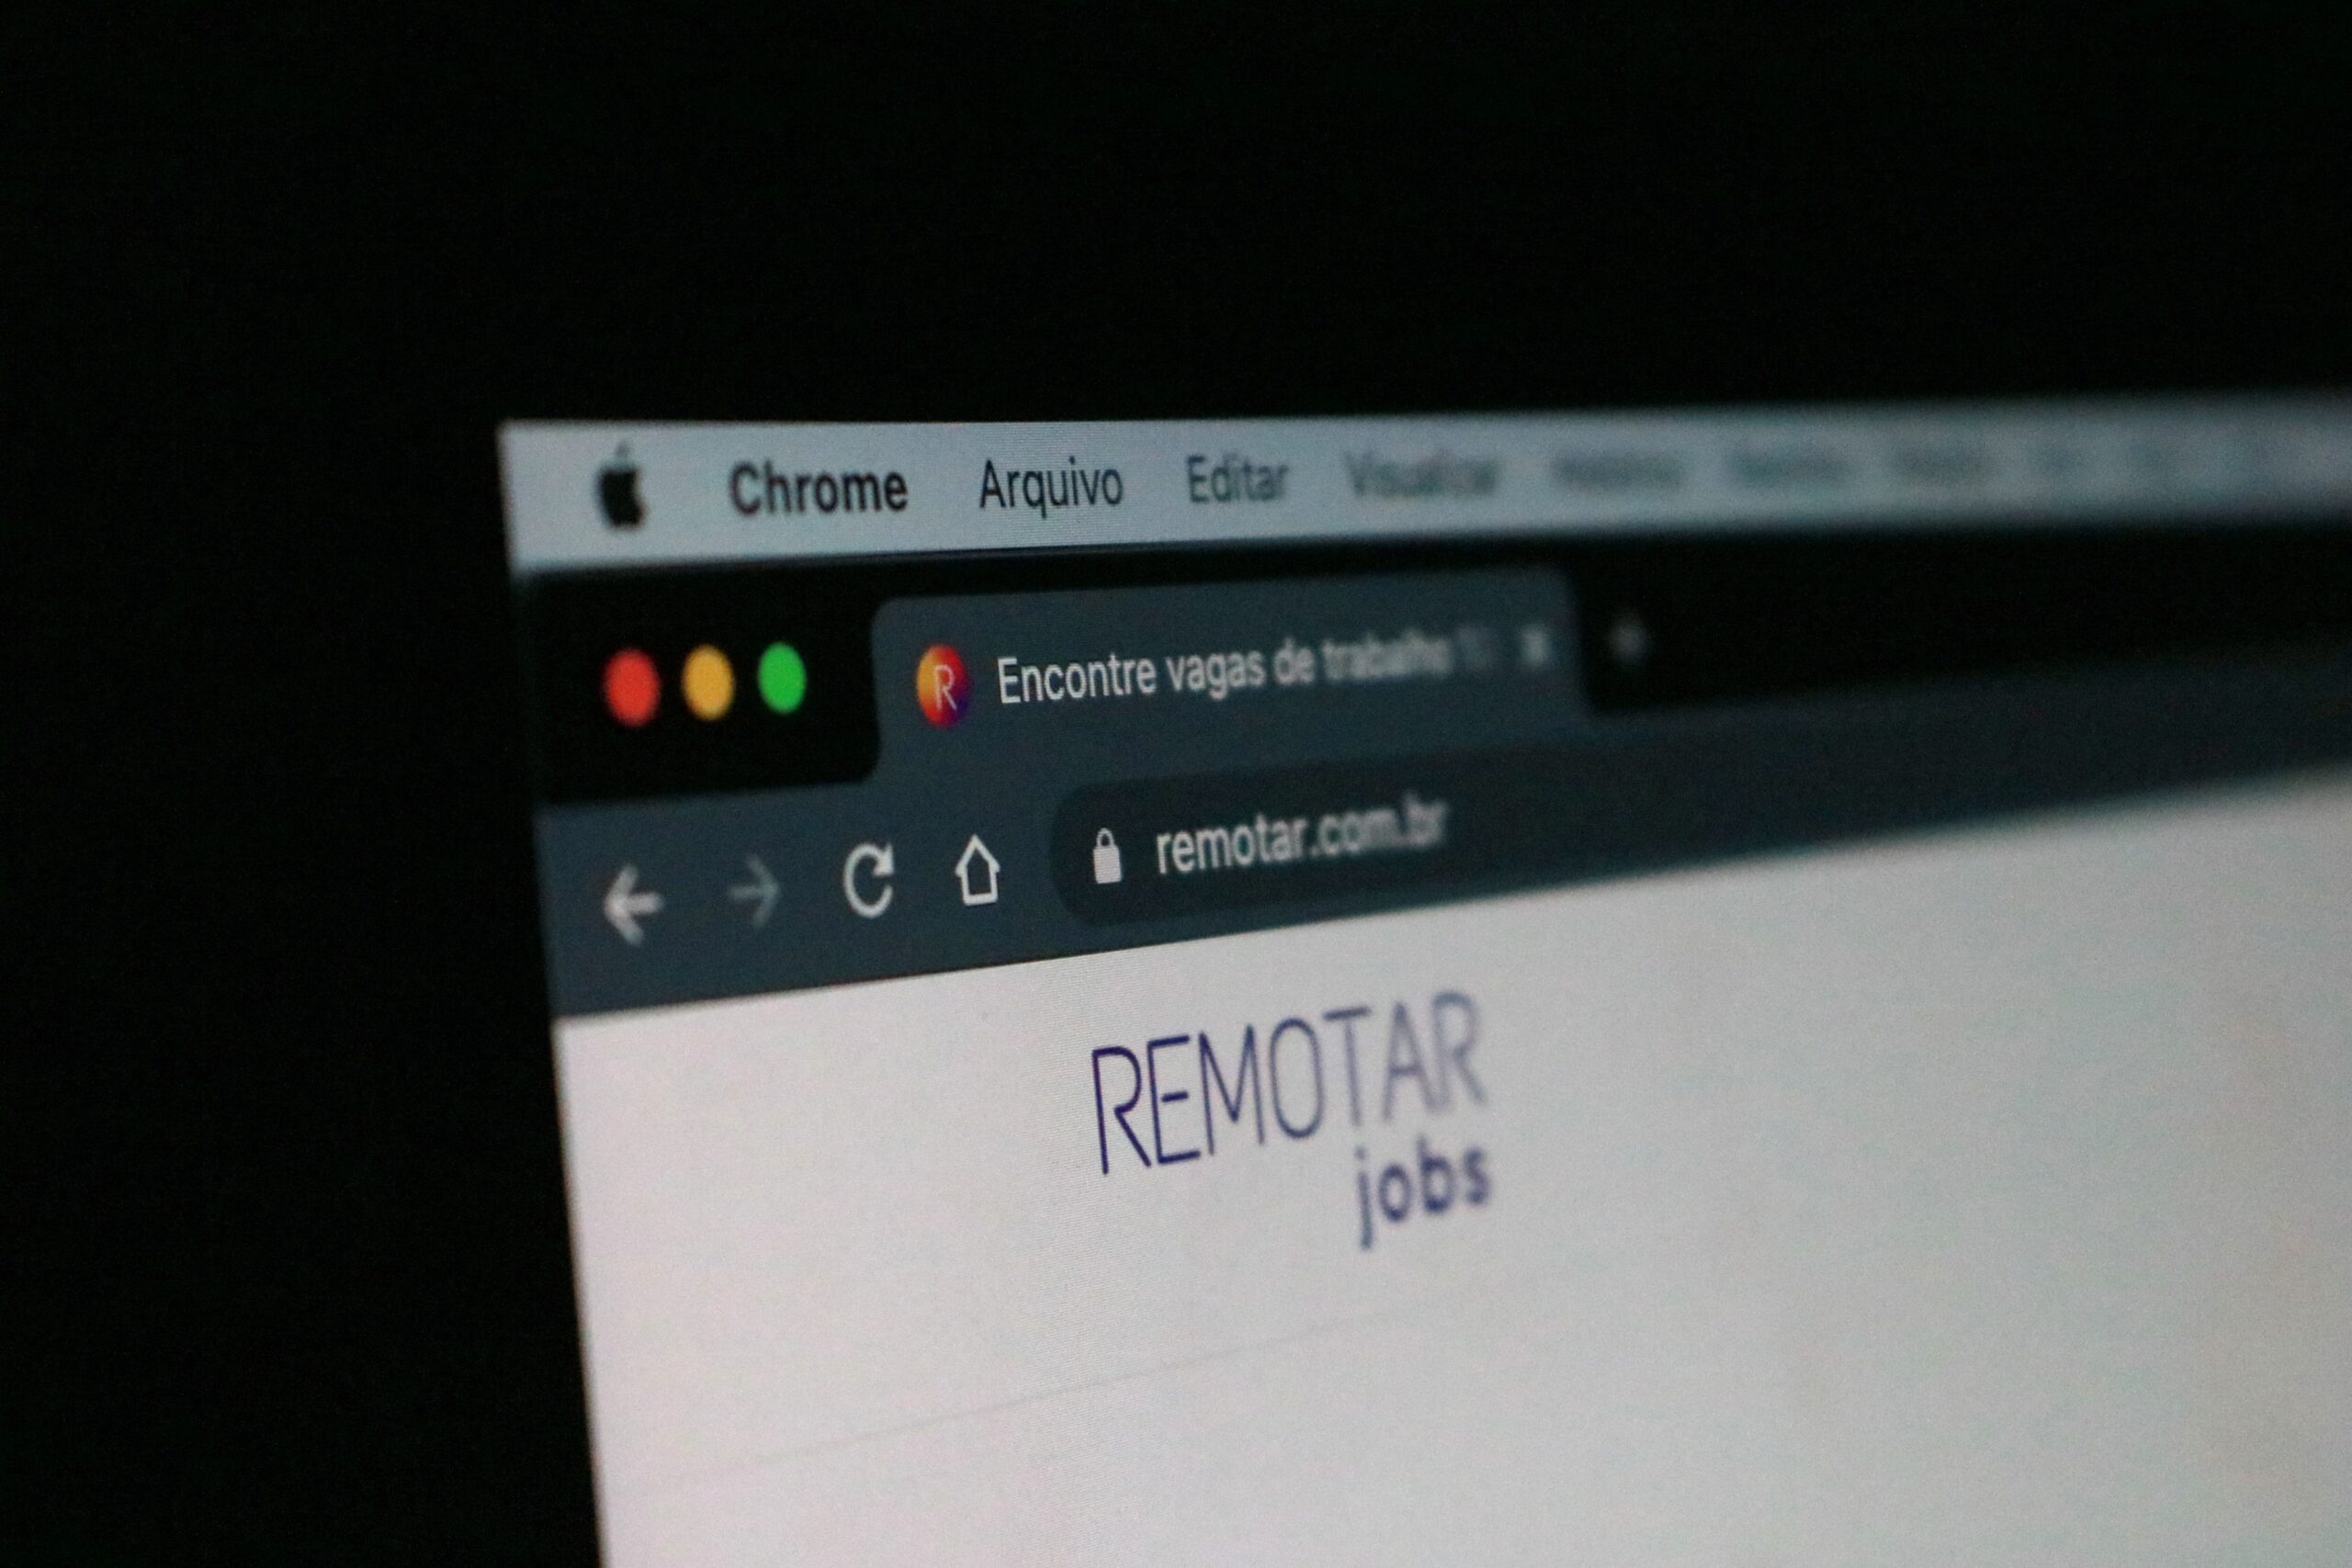 remotar-jobs-s5kTY-Ve1c0-unsplash